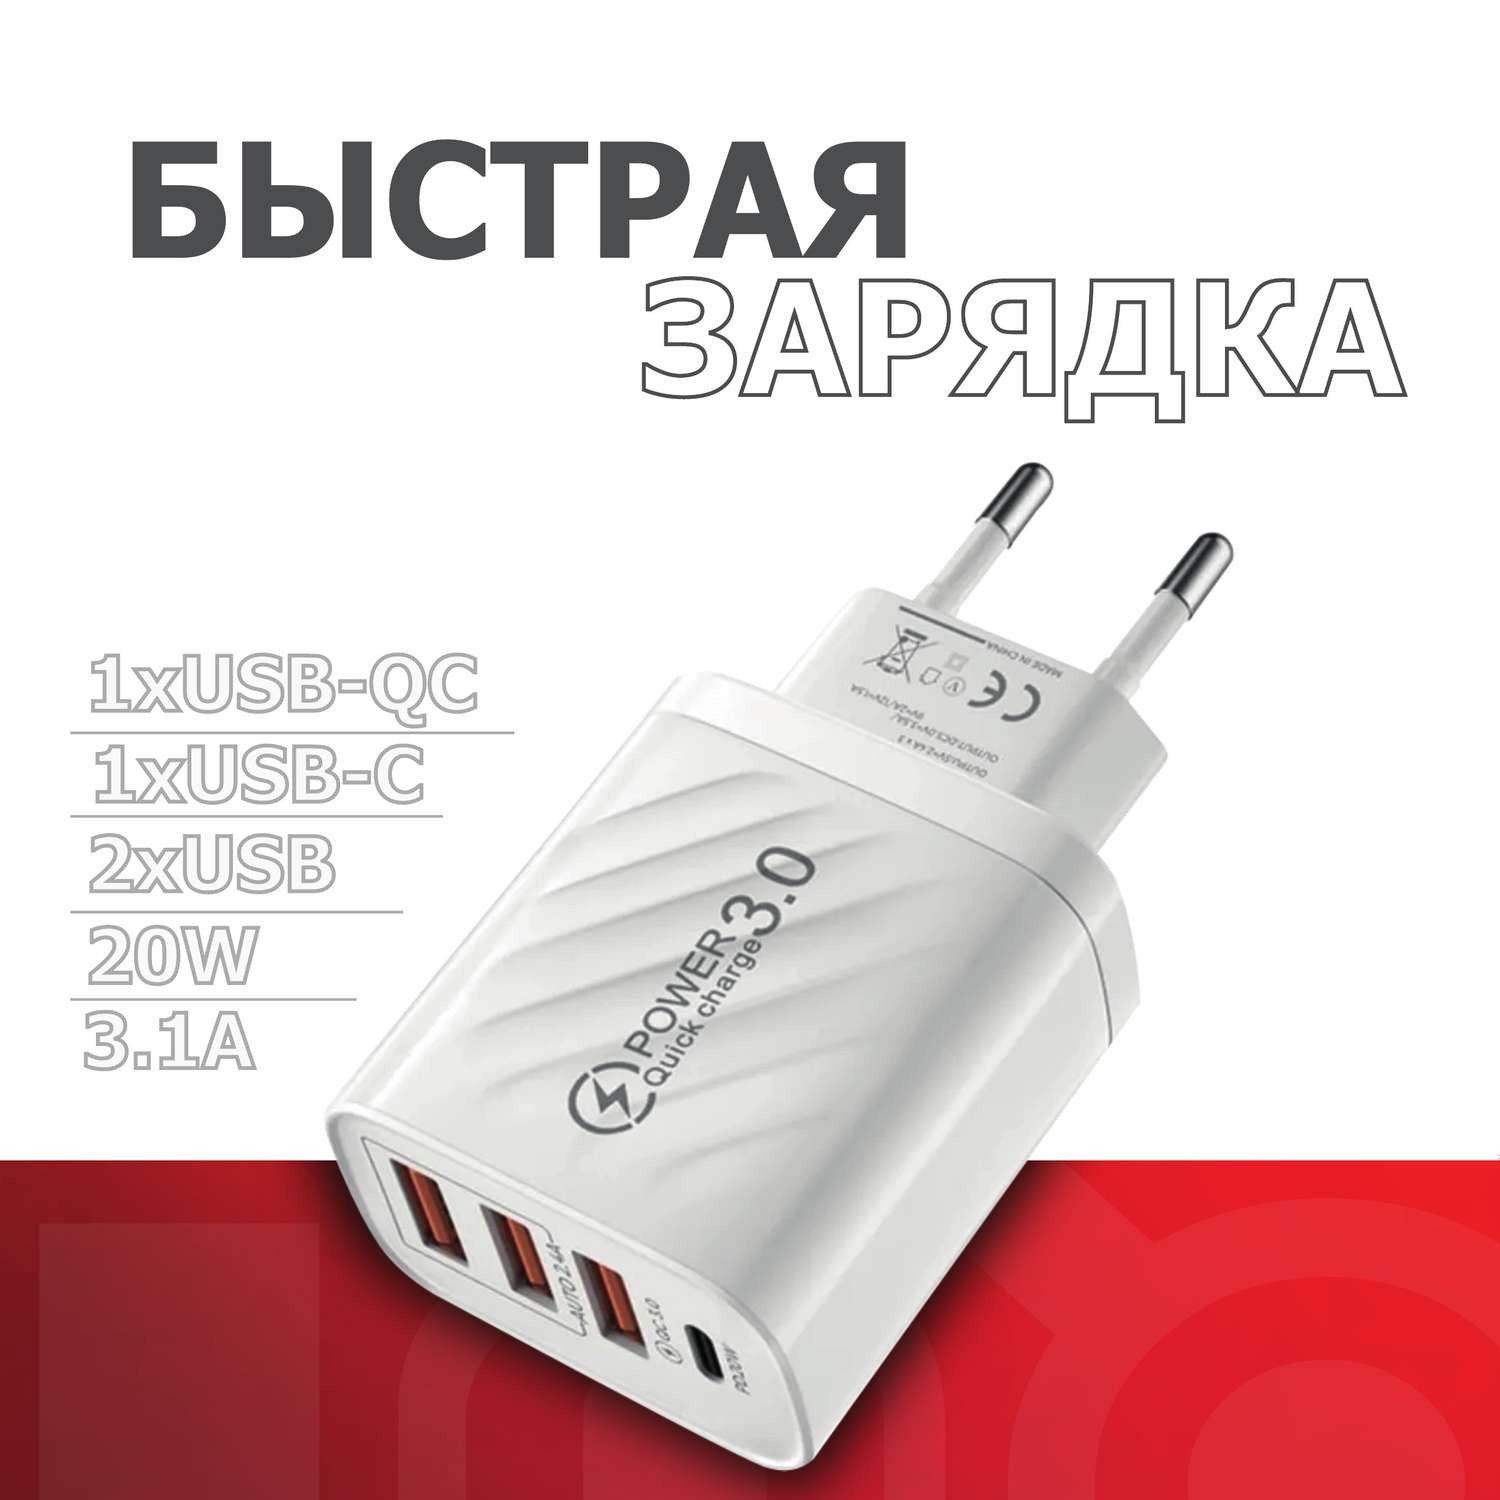 Сетевой блок питания QUIVIRA быстрая зарядка USB- TYPE-C 20W 3.1A - фото 1